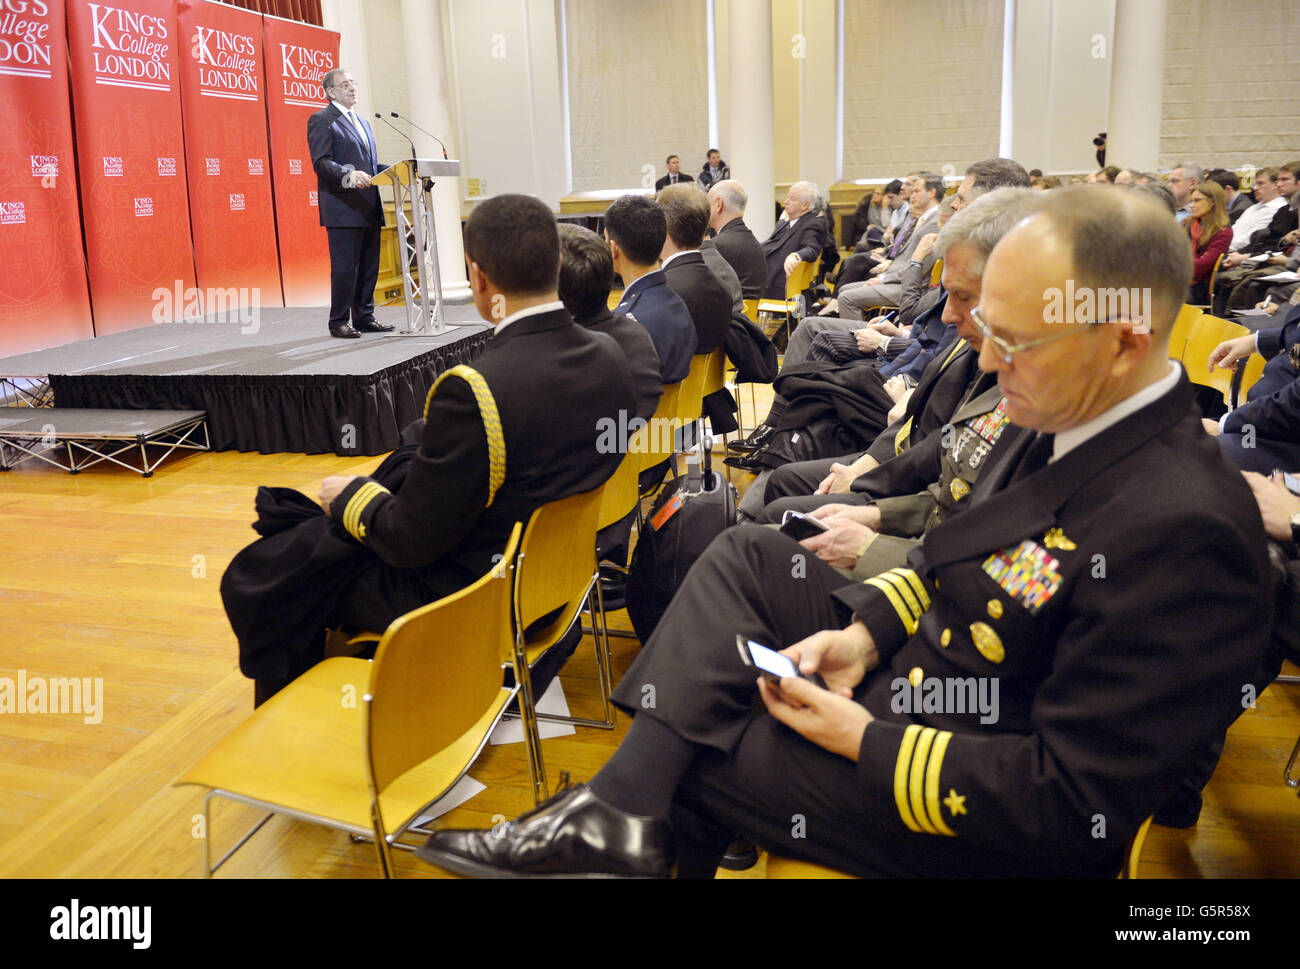 US-Militärangehörige halten als US-Verteidigungsminister Leon Panetta eine Rede über die transatlantischen Beziehungen und die Zukunft der US-Verteidigung auf dem King's College Strand Campus in London. Stockfoto